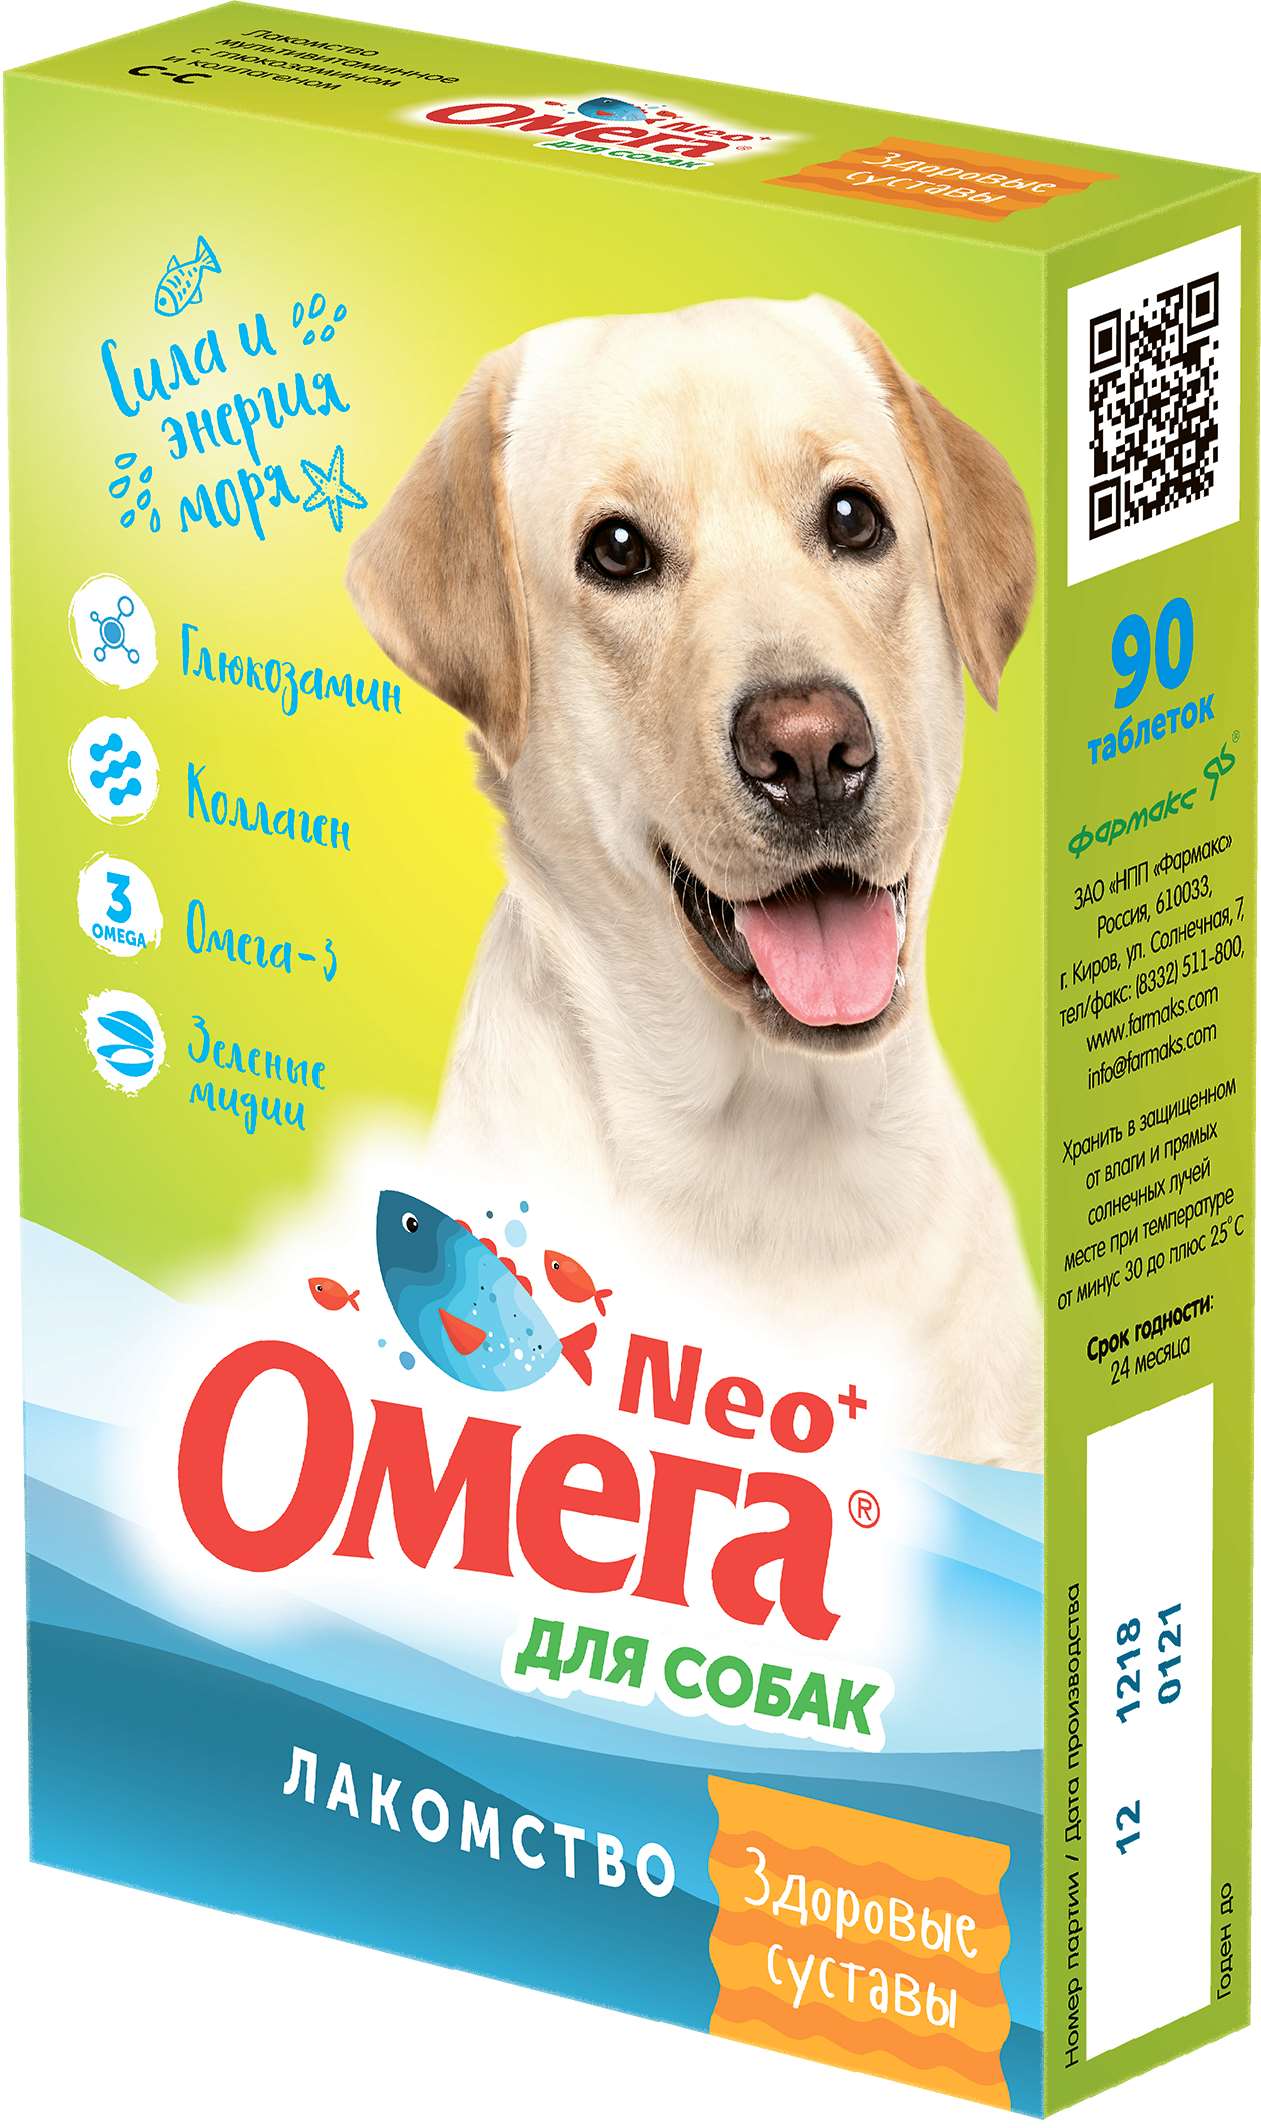 Витаминизированное лакомство для собак Омега NEO+ Здоровые суставы, 90 табл, 5 шт